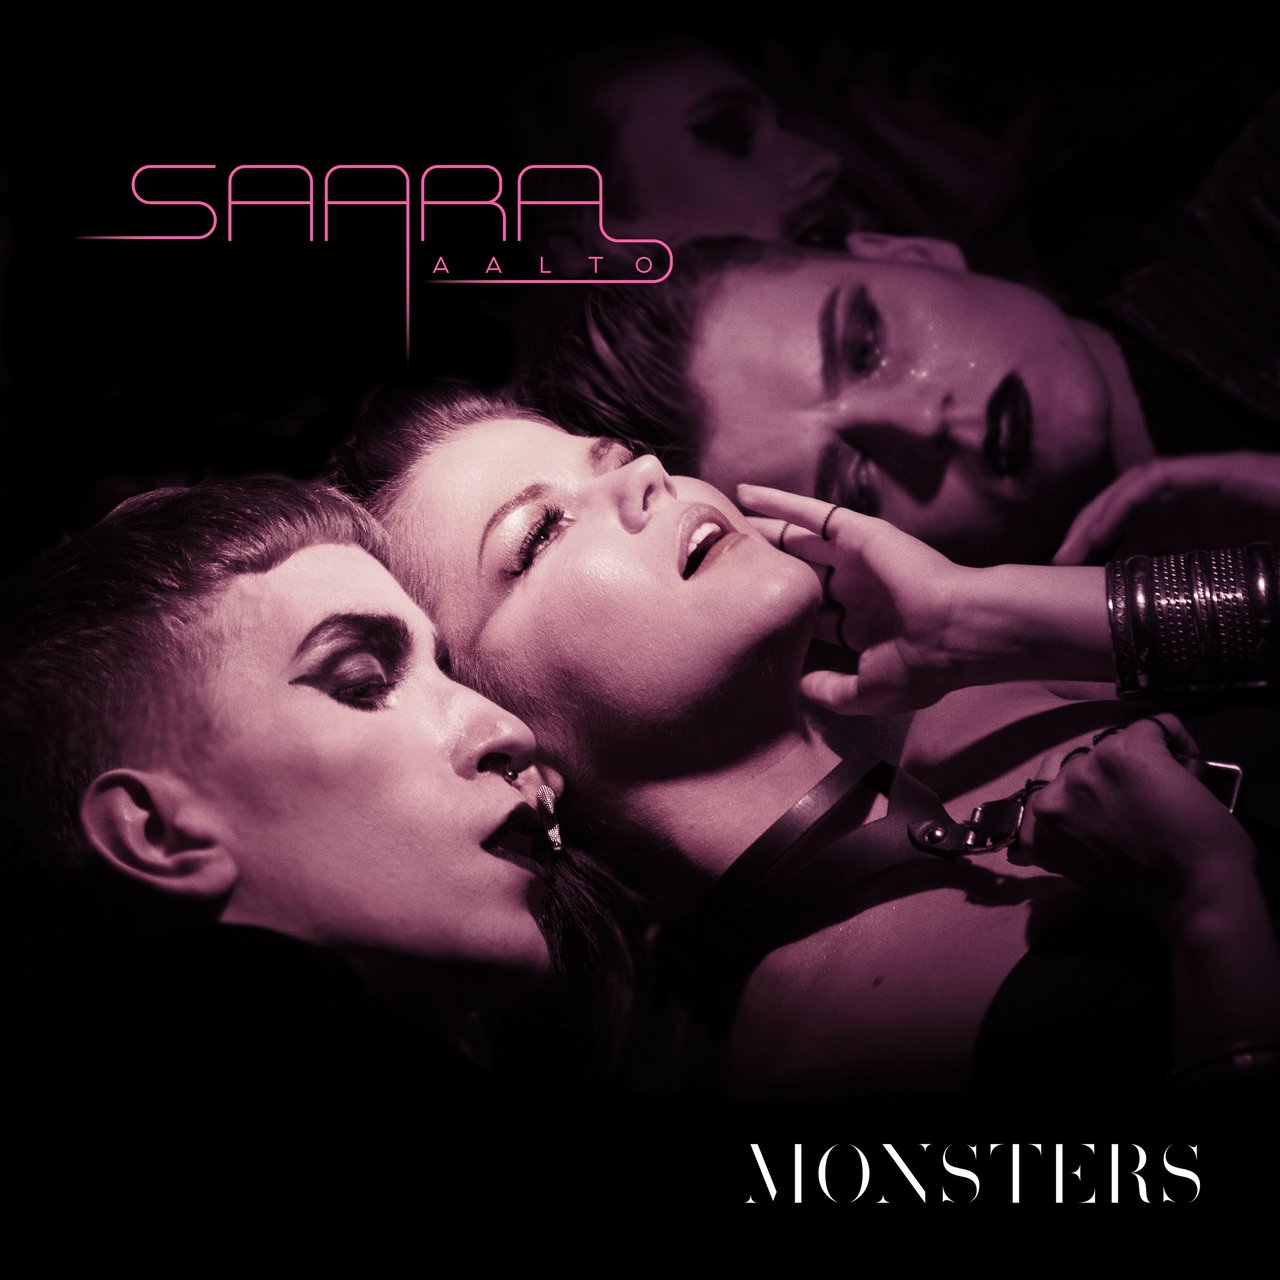 Saara Aalto — Monsters cover artwork